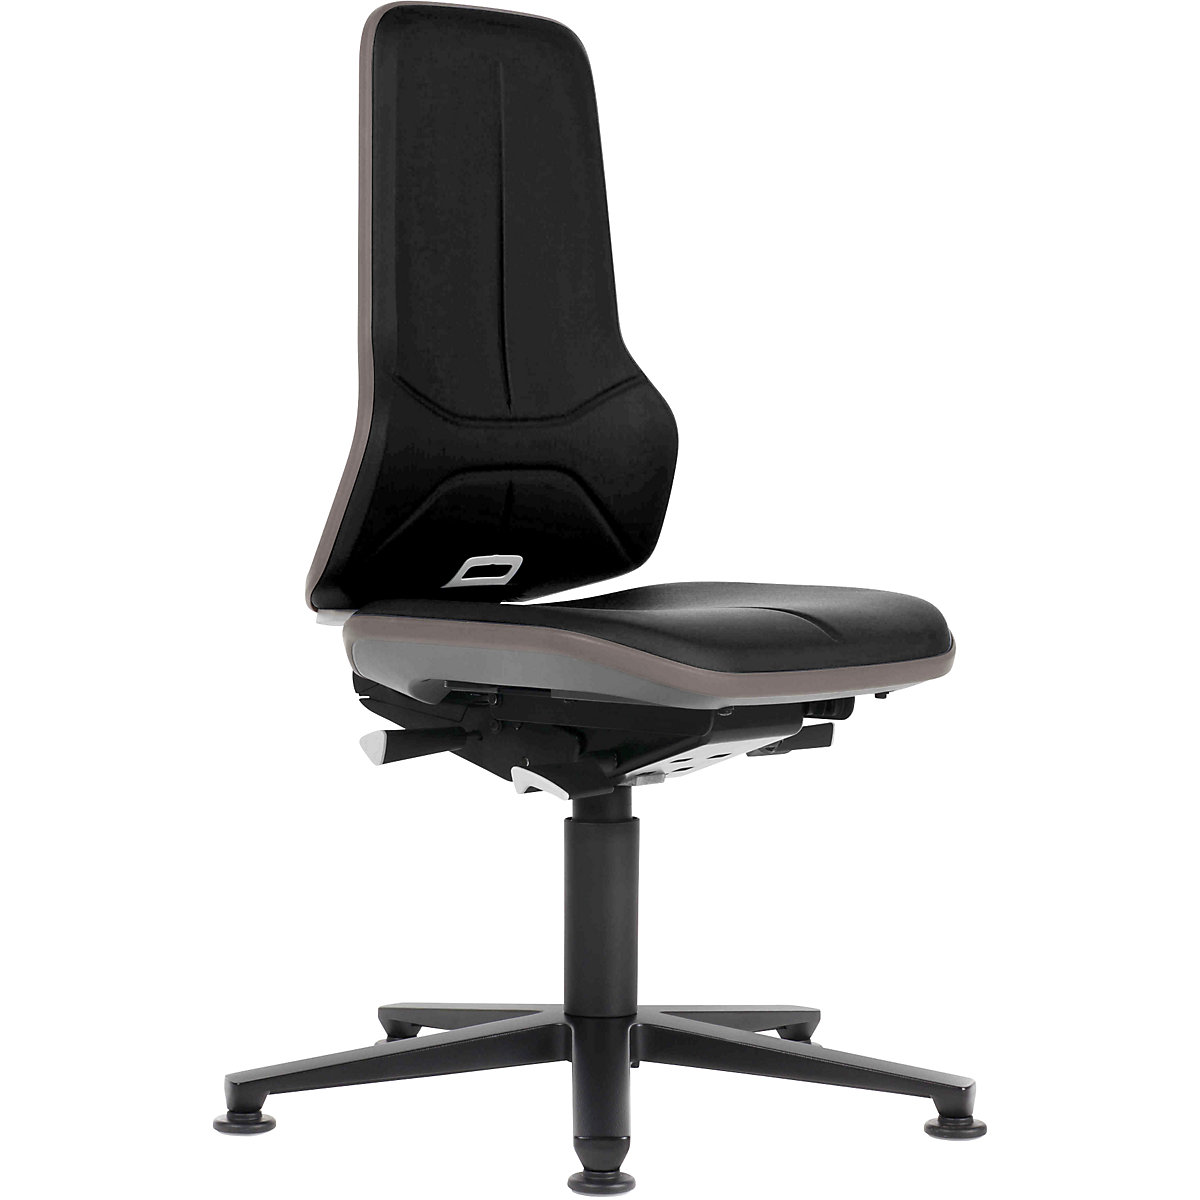 Pracovní otočná židle NEON, patky – bimos, permanentní kontakt, koženka, šedý flexibilní pás-11